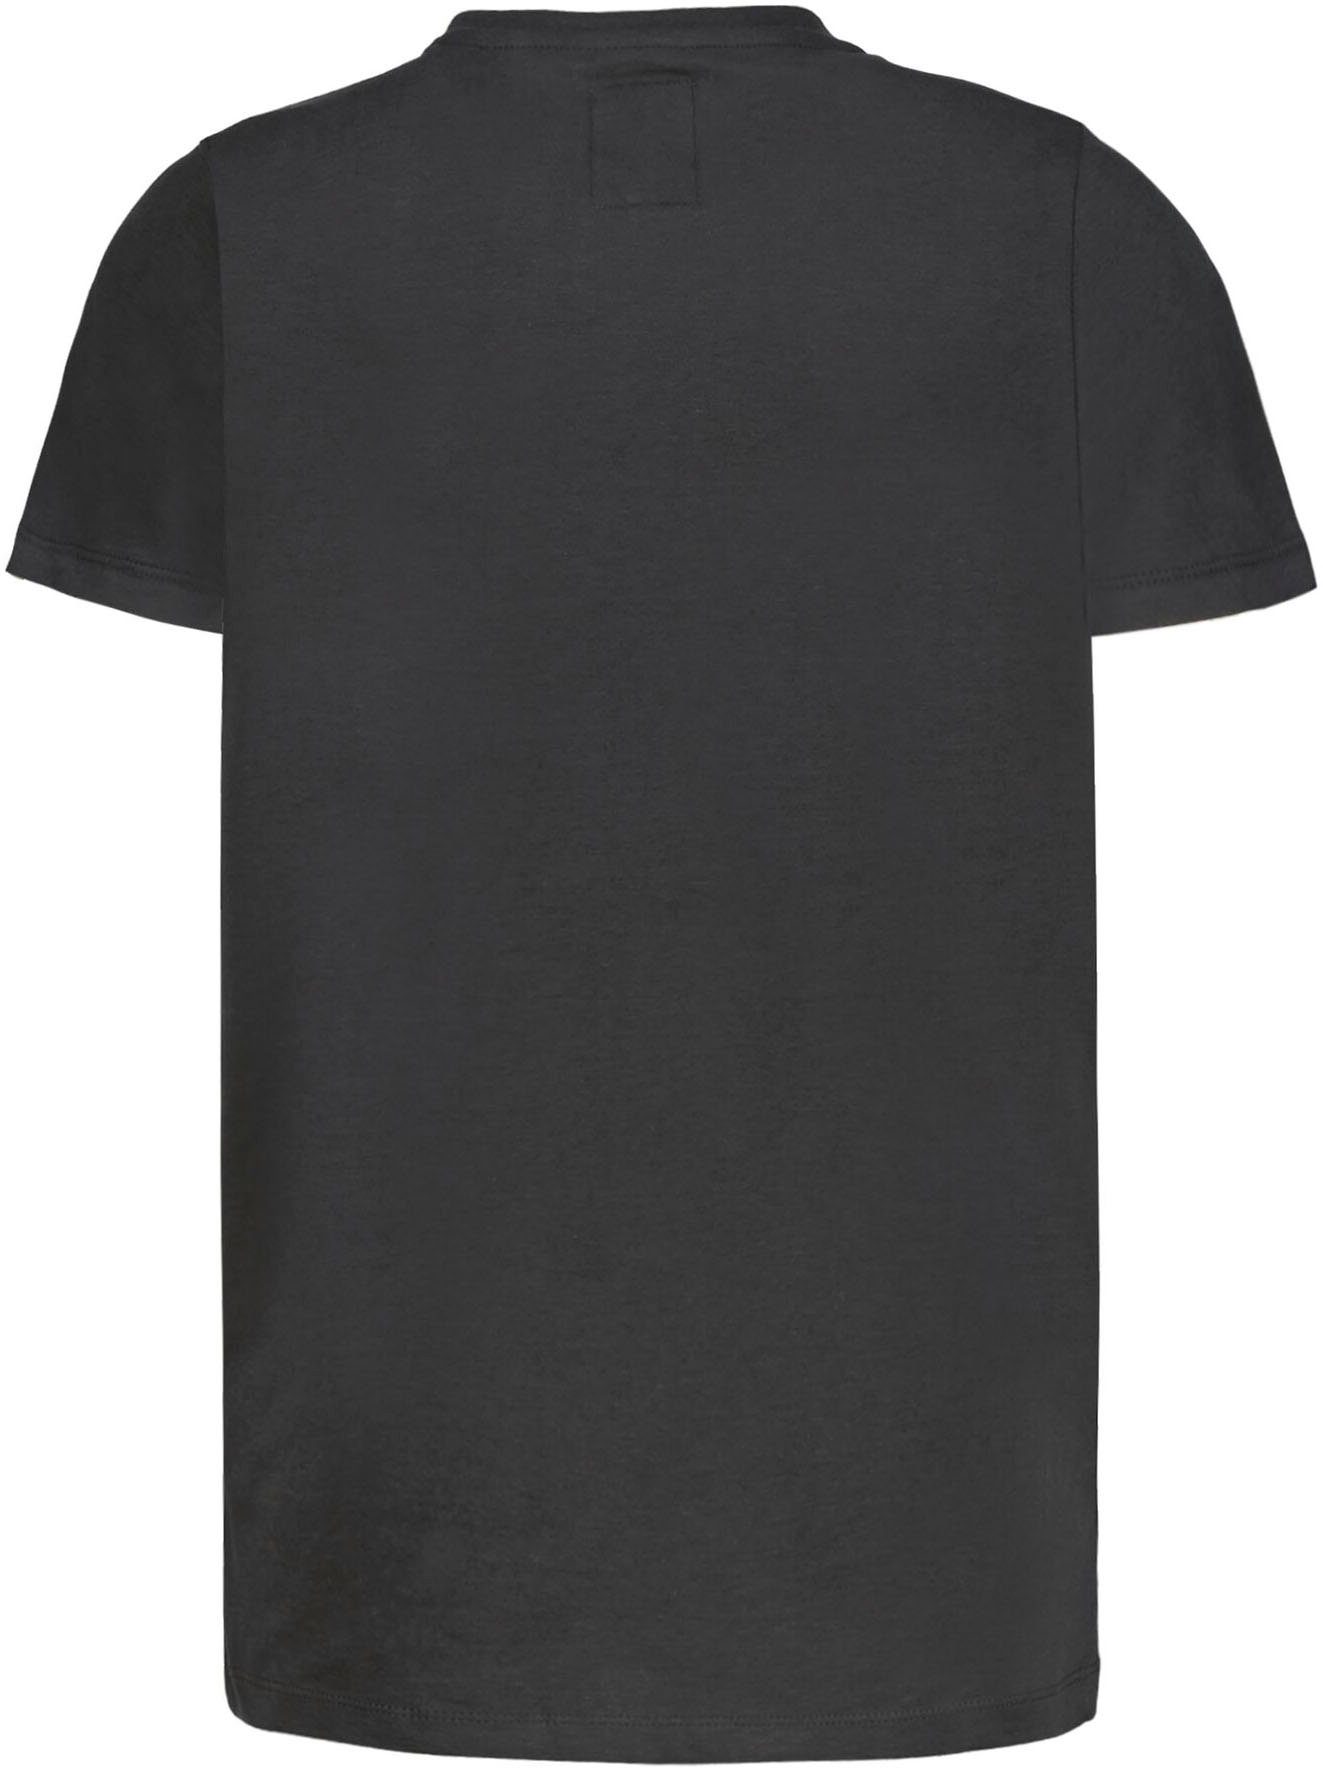 Garcia T-Shirt for grey dark BOYS